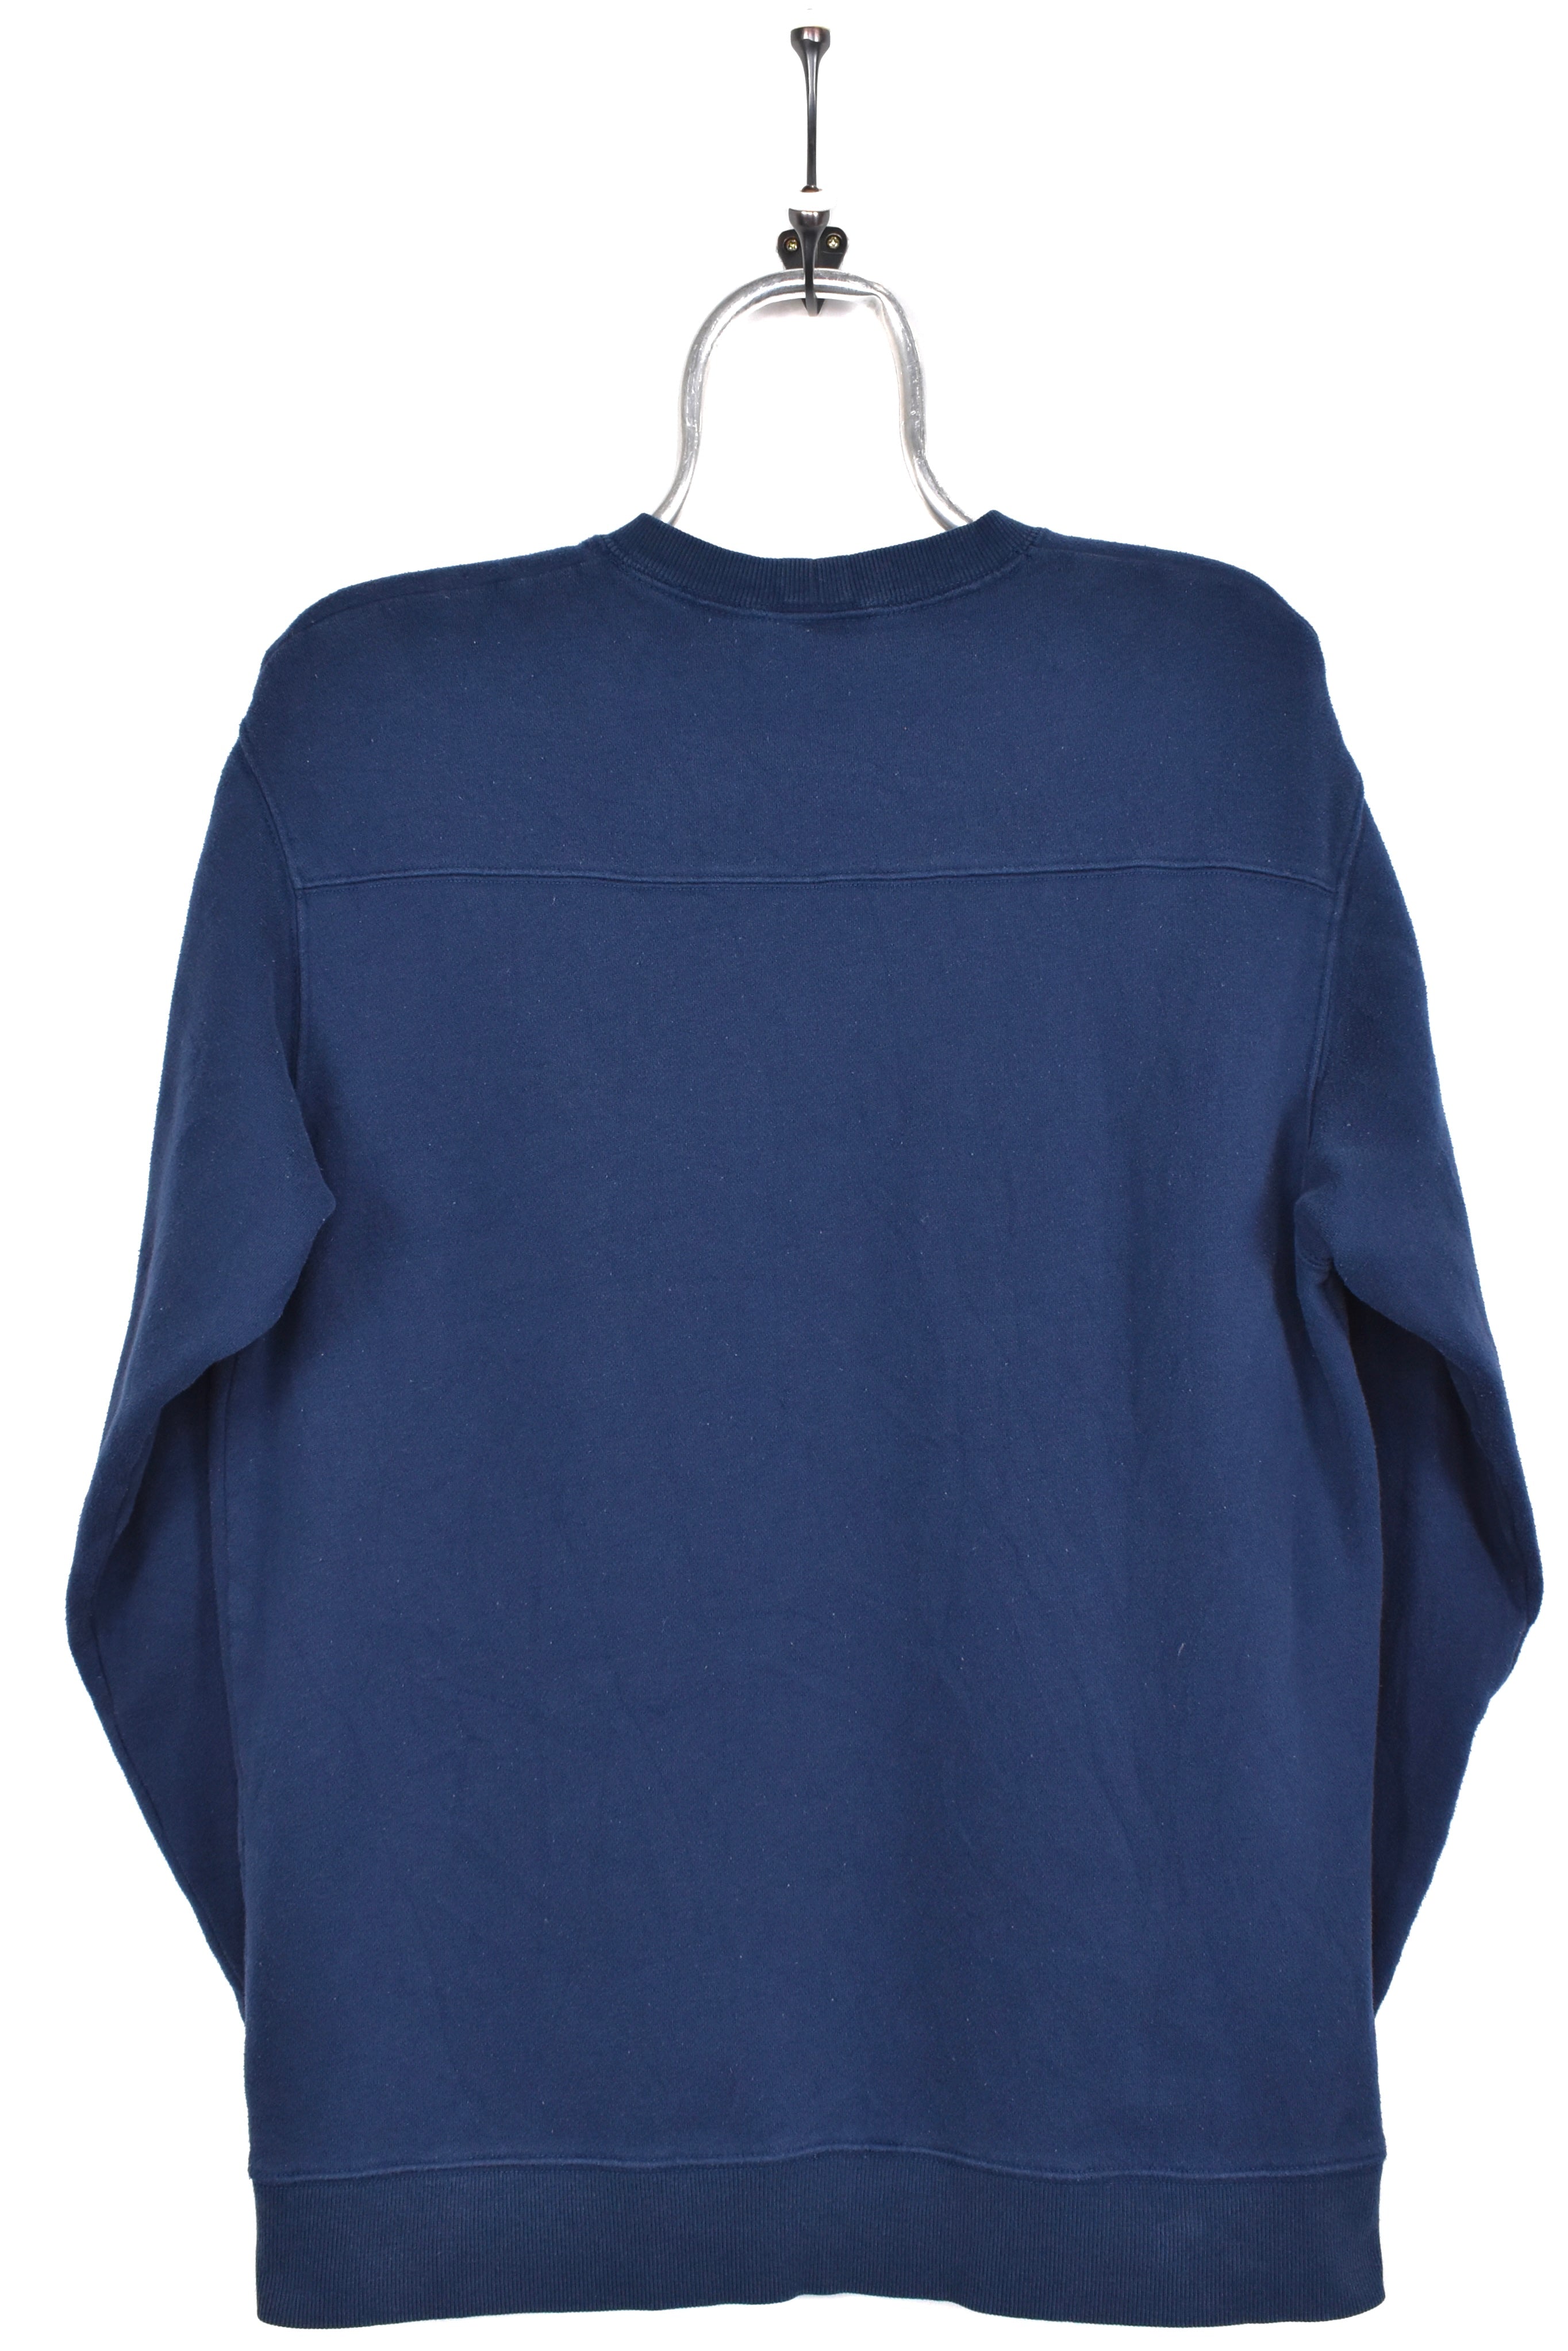 Vintage Columbia sweatshirt, navy blue embroidered crewneck - AU Medium COLUMBIA